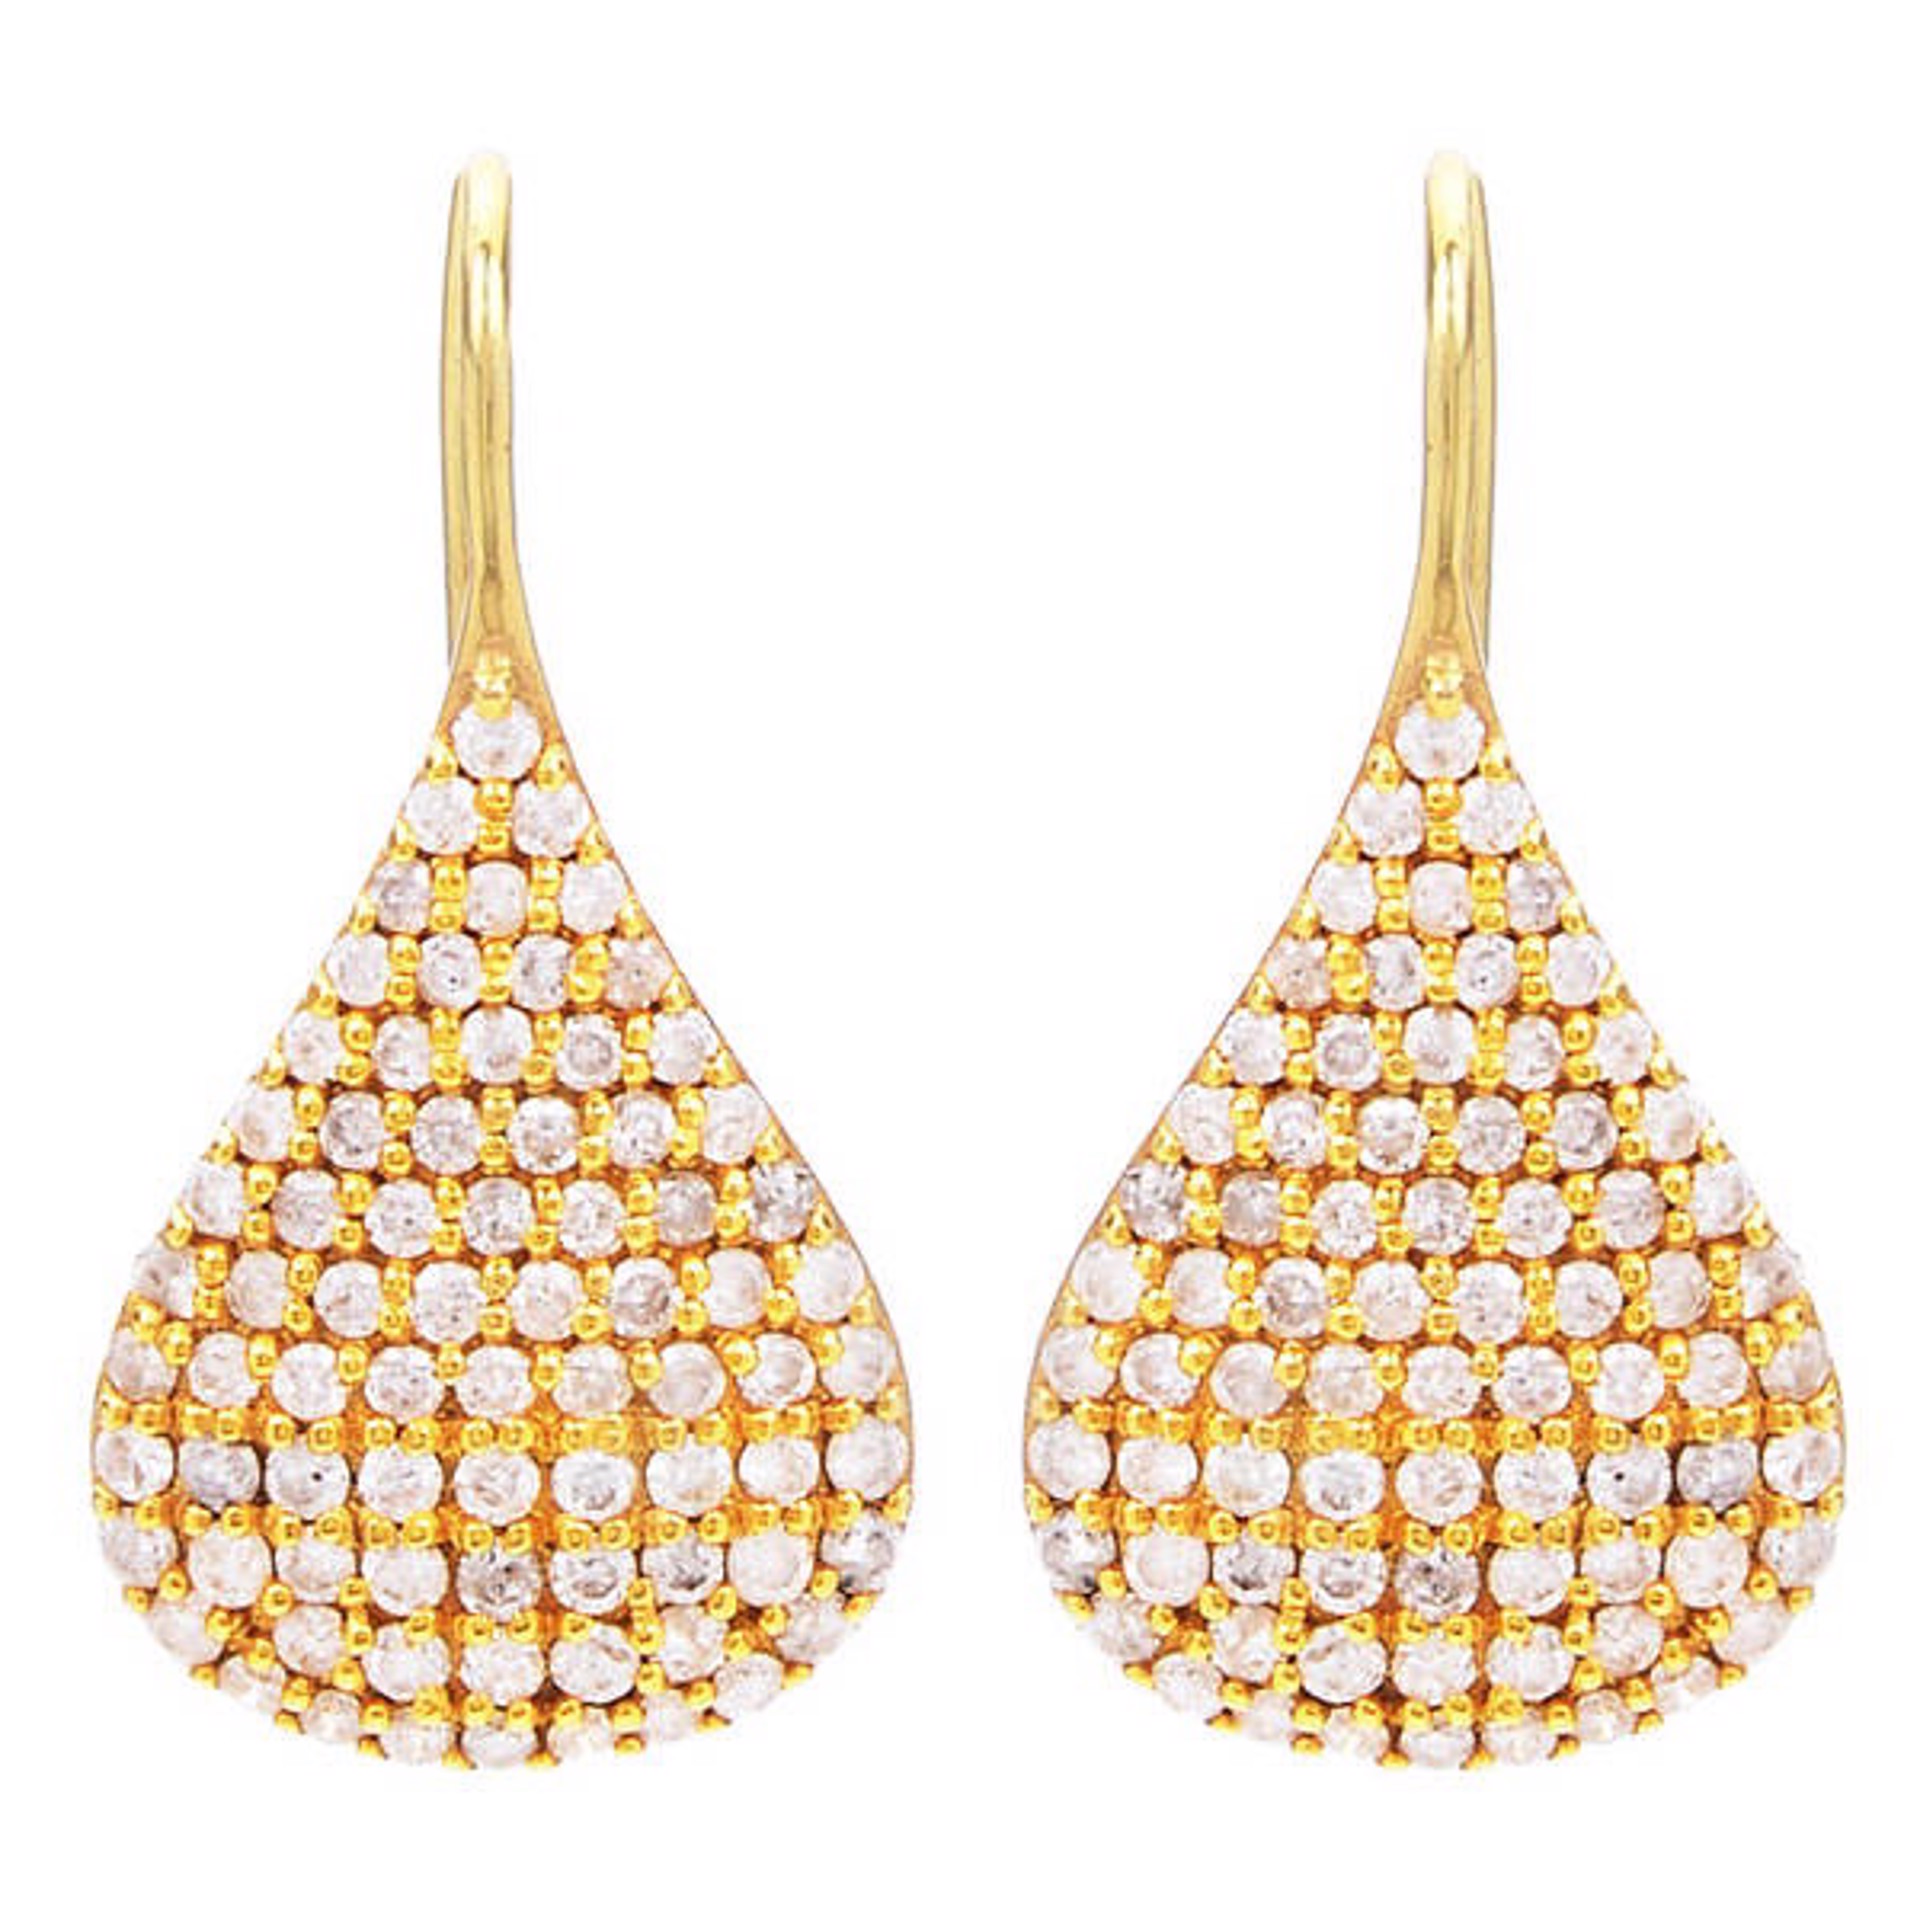 Diamond Gold Pave Pear Earrings by Lauren Harper